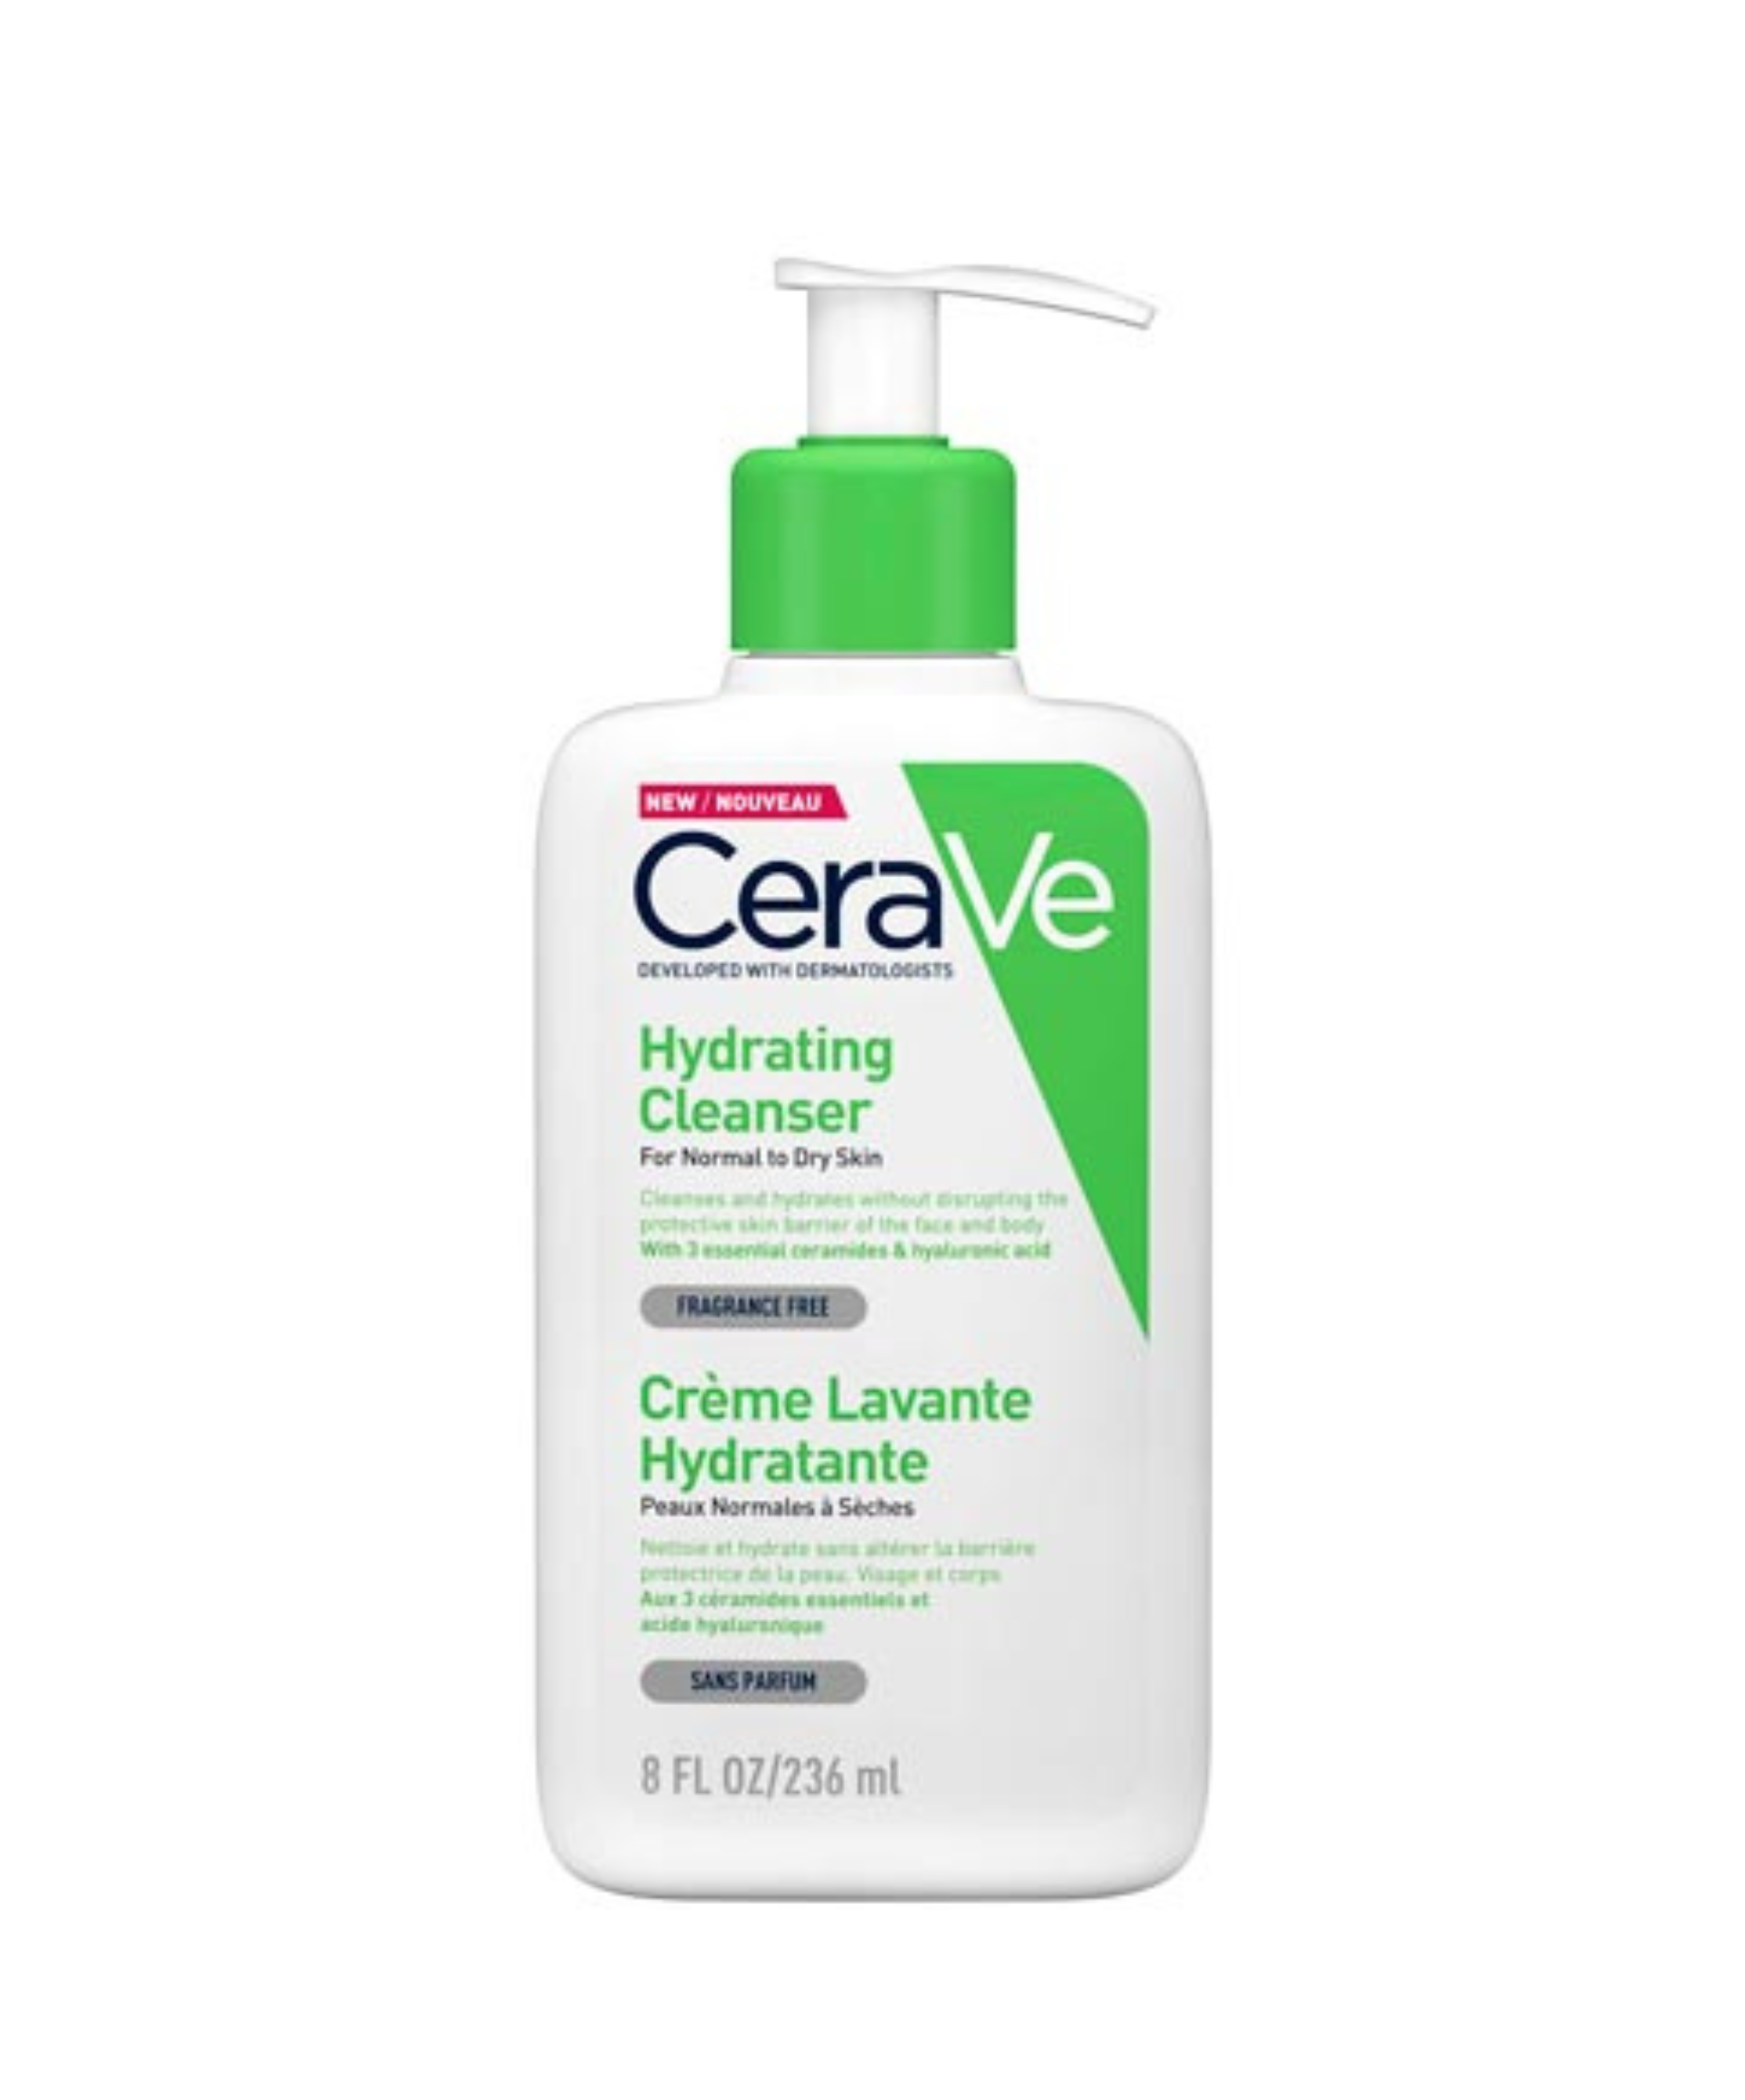 Acheter Crème Hydratante Visage SPF50 52mL de CeraVe au meilleur